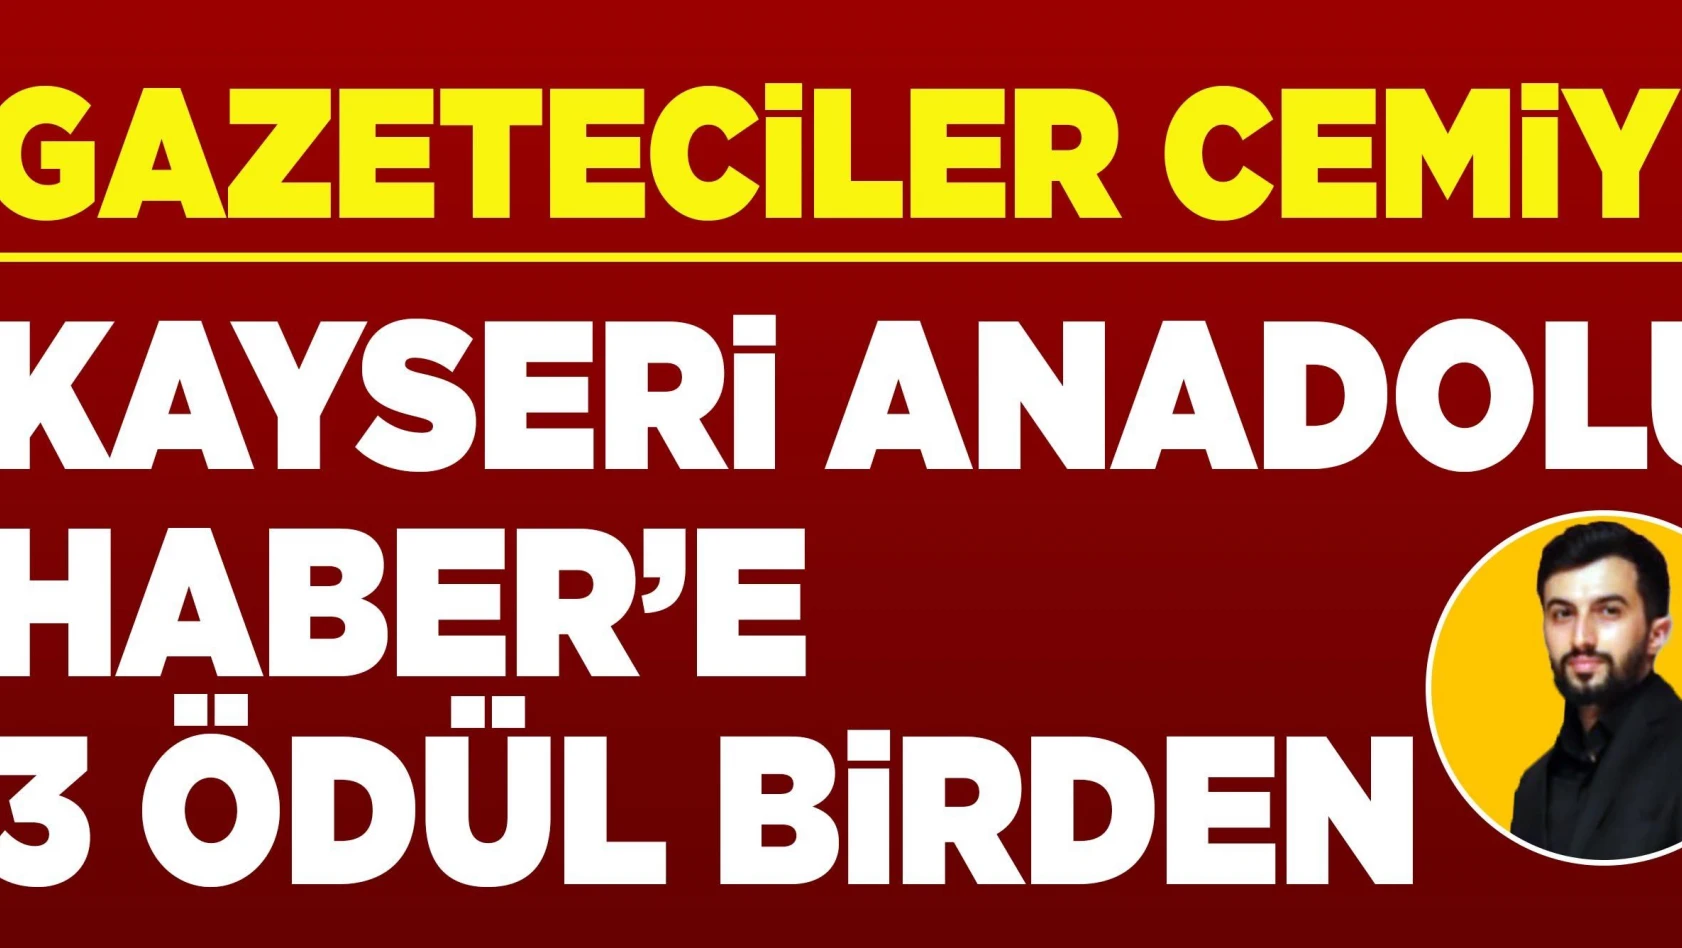 Kayseri Gazeteciler Cemiyeti'nden gazetemize 3 ödül